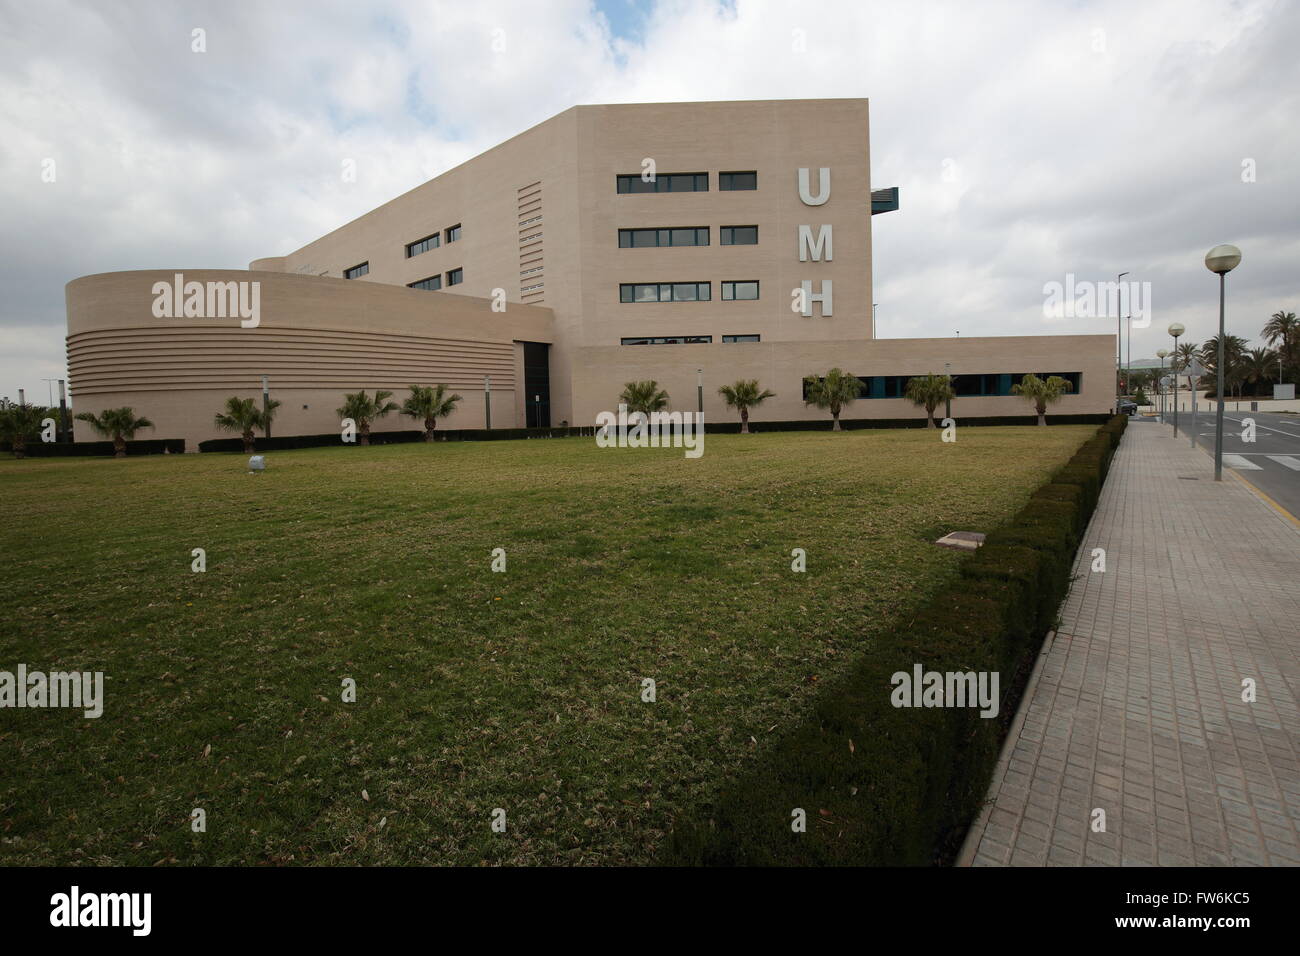 Elche, Spain. 17 de Marzo de 2016: Edificio de la Universidad Miguel Hernández de Elche. Stock Photo